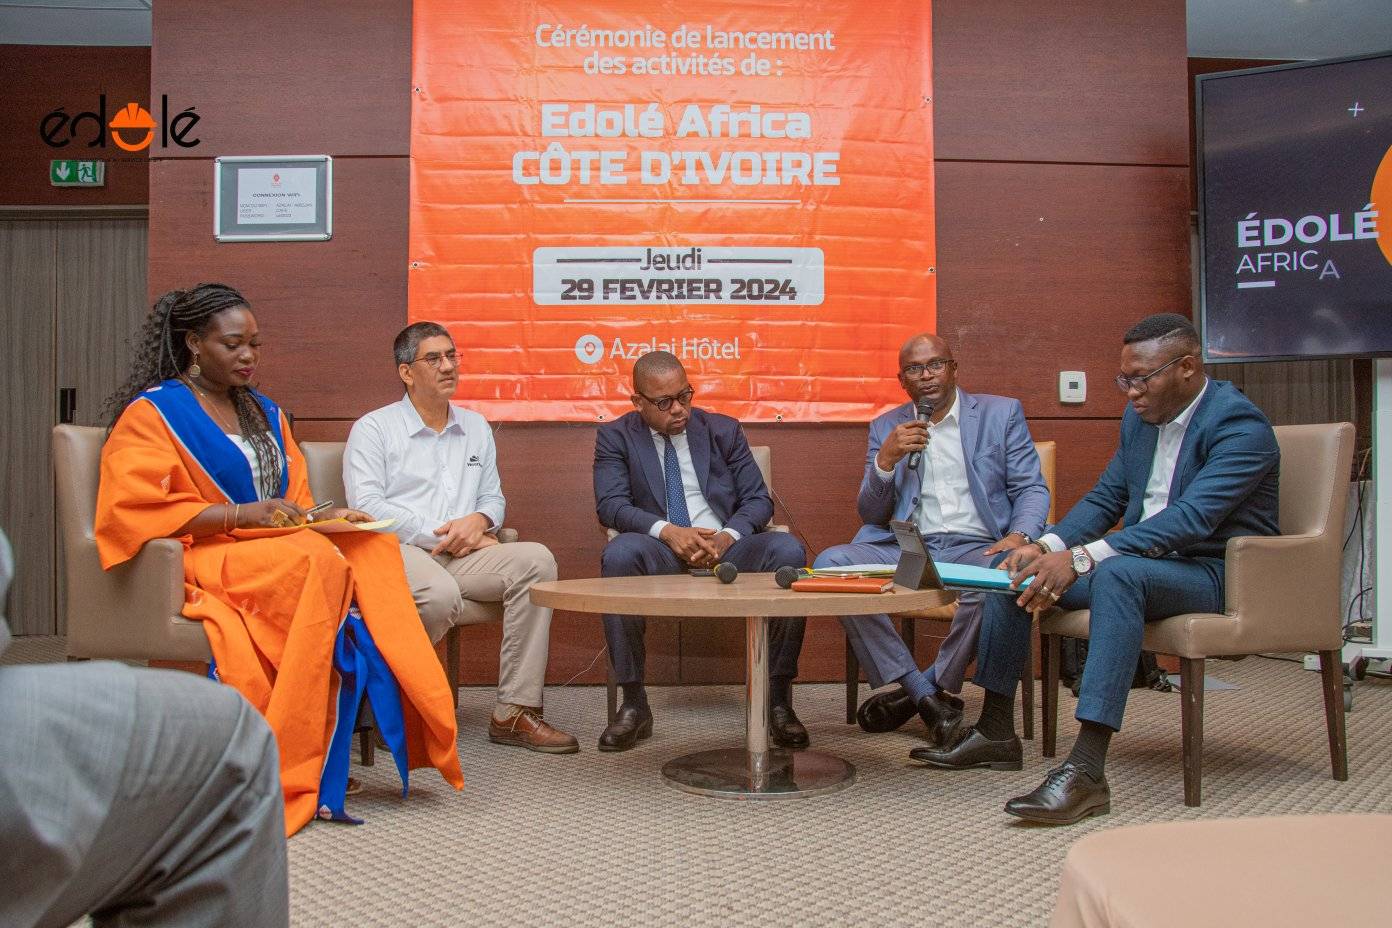 Cérémonie de lancement mémorable d'EDOLE AFRICA en Côte d'Ivoire